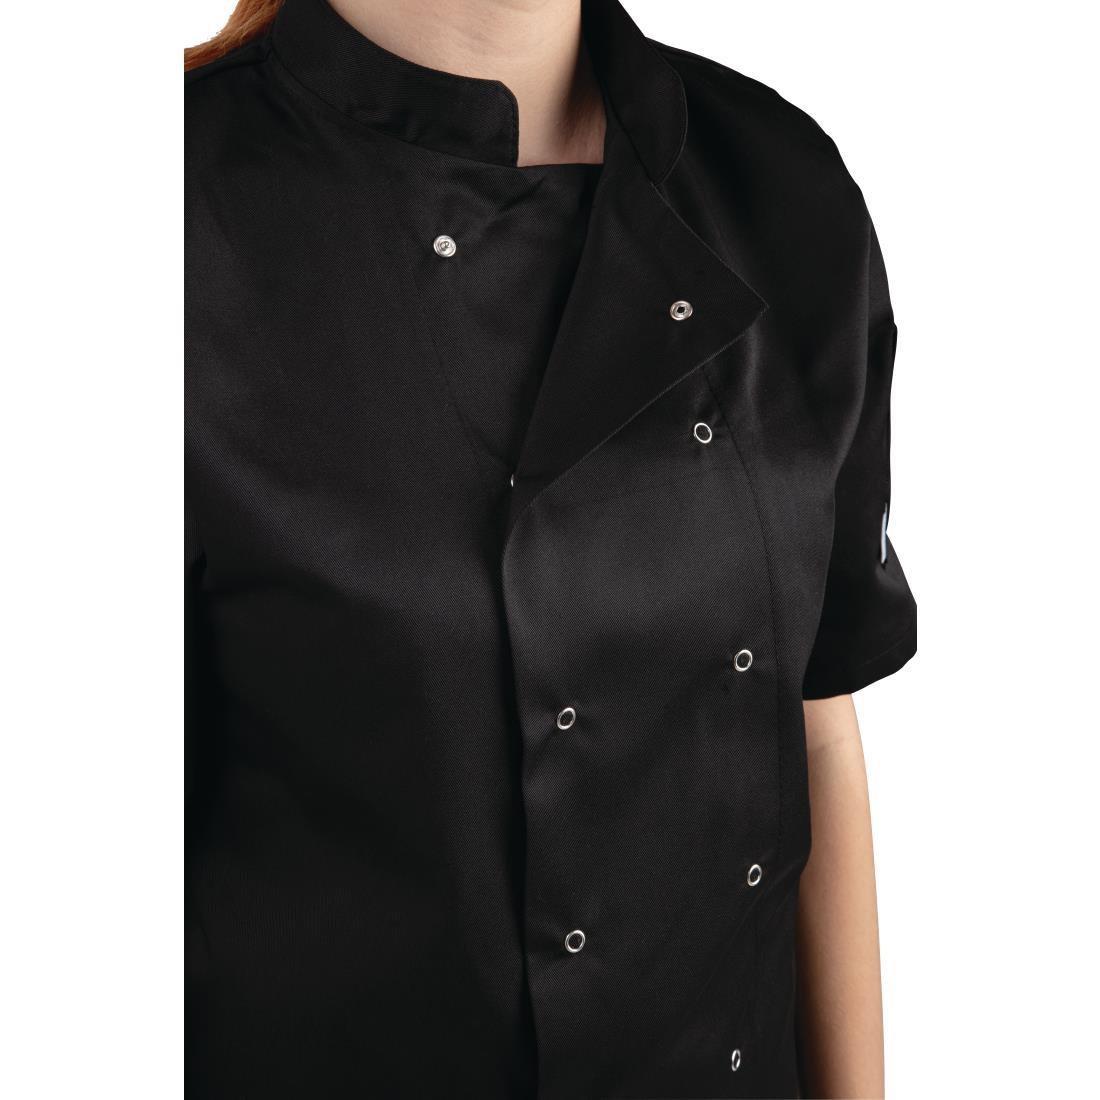 Whites Vegas Unisex Chefs Jacket Short Sleeve Black 4XL - A439-4XL  - 2